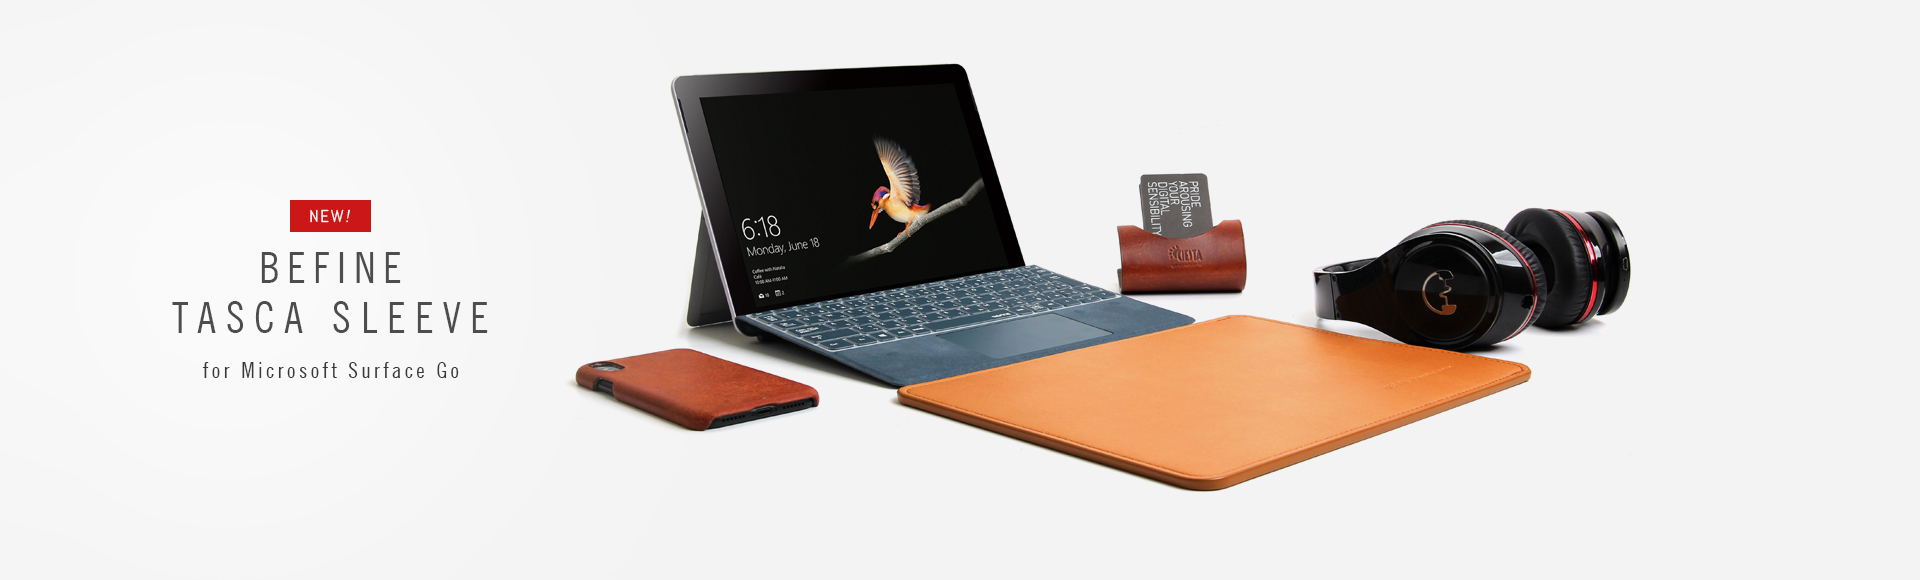 BEFINE Tasca Sleeve for Microsoft Surface Go